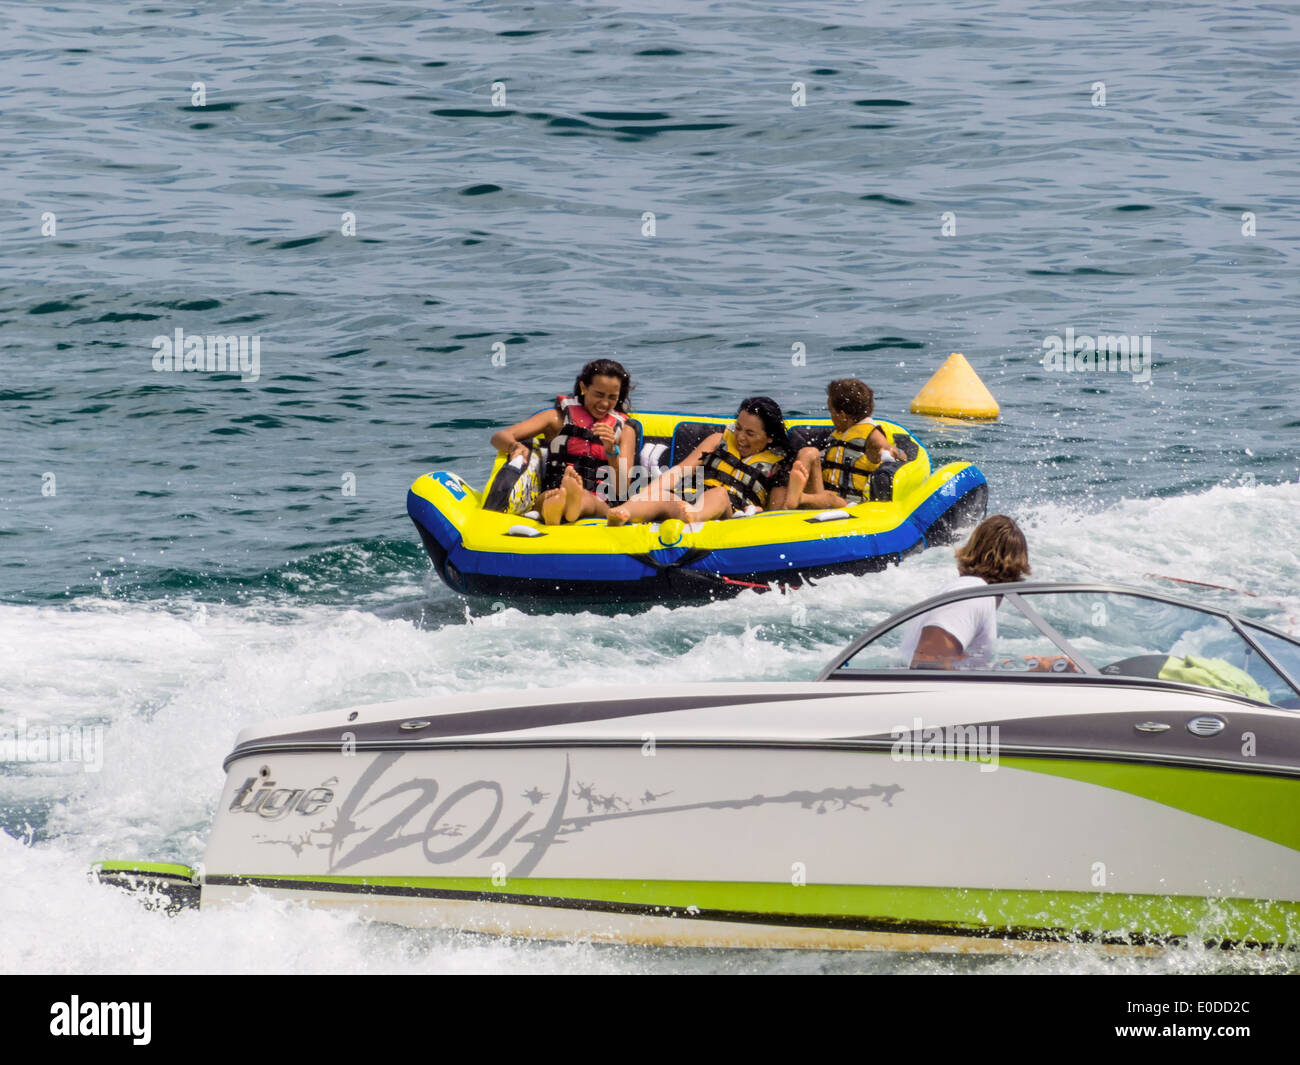 Vacationers in a rubber dinghy in the surf are pulled by motorboat., Urlauber in einem Schlauchboot in der Brandung werden von M Stock Photo